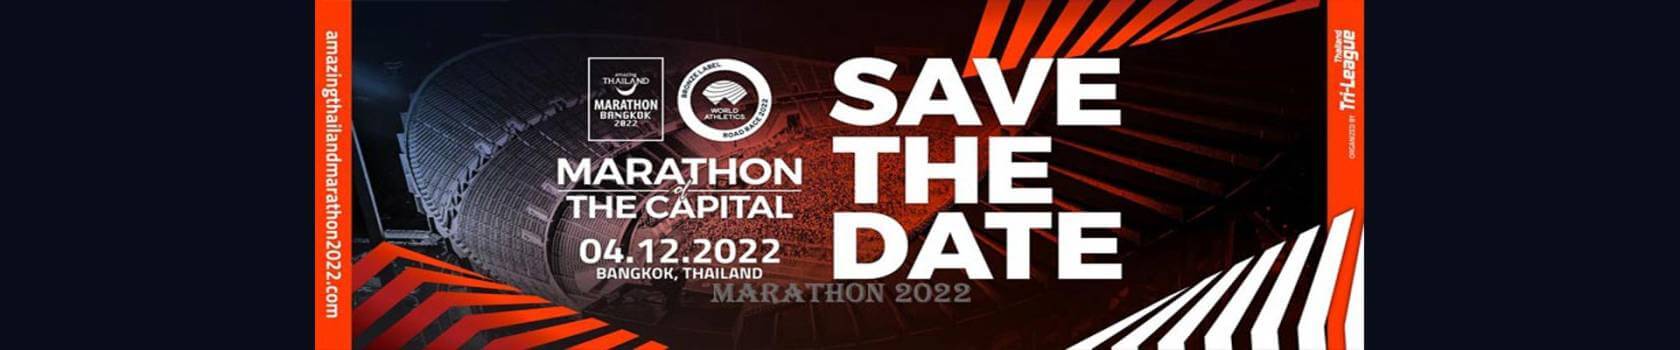 5th Amazing Thailand Marathon Bangkok 2022